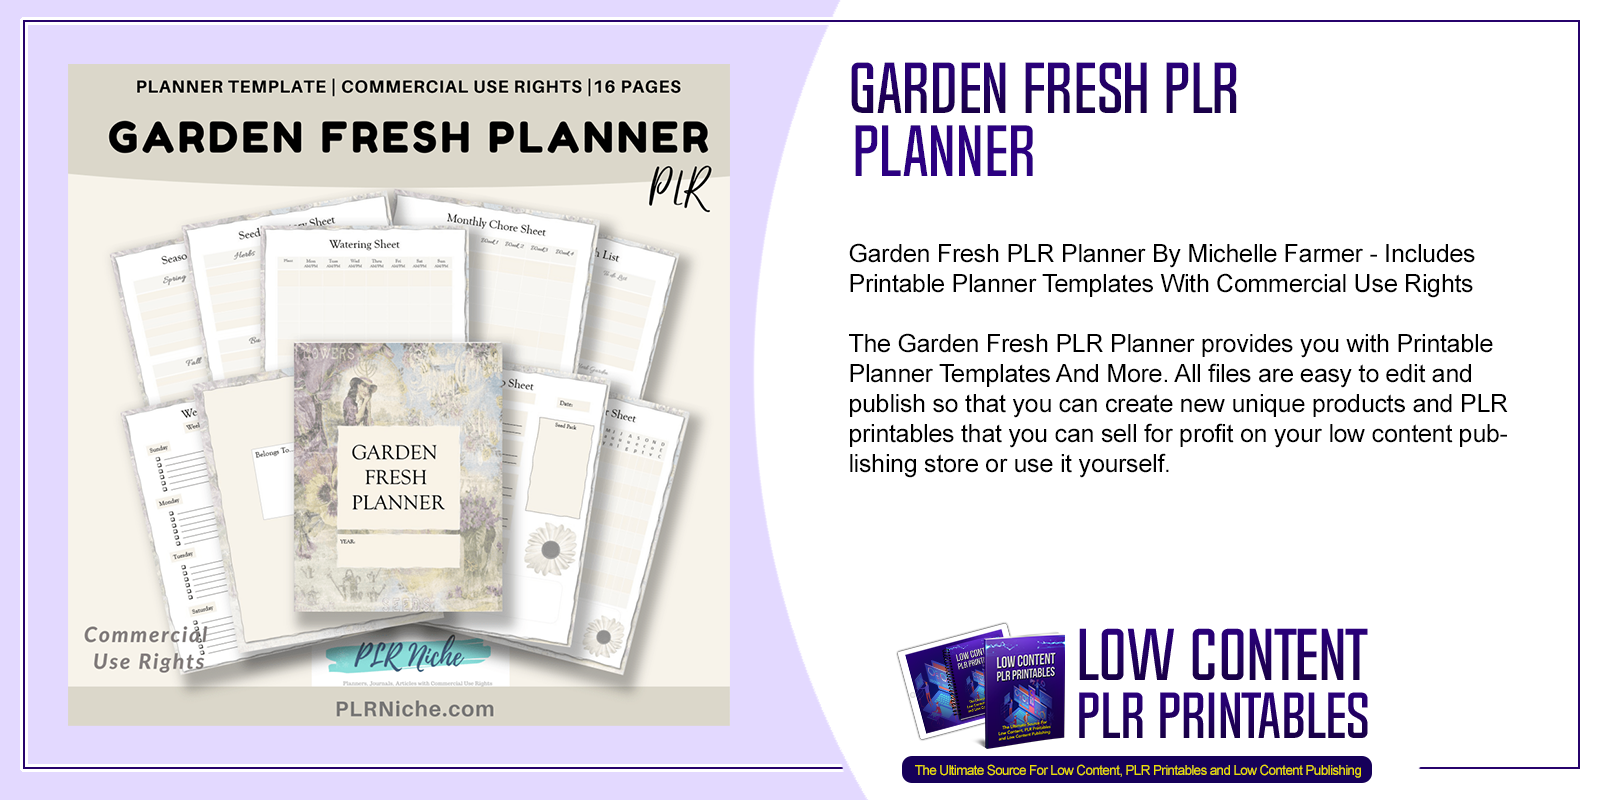 Garden Fresh PLR Planner